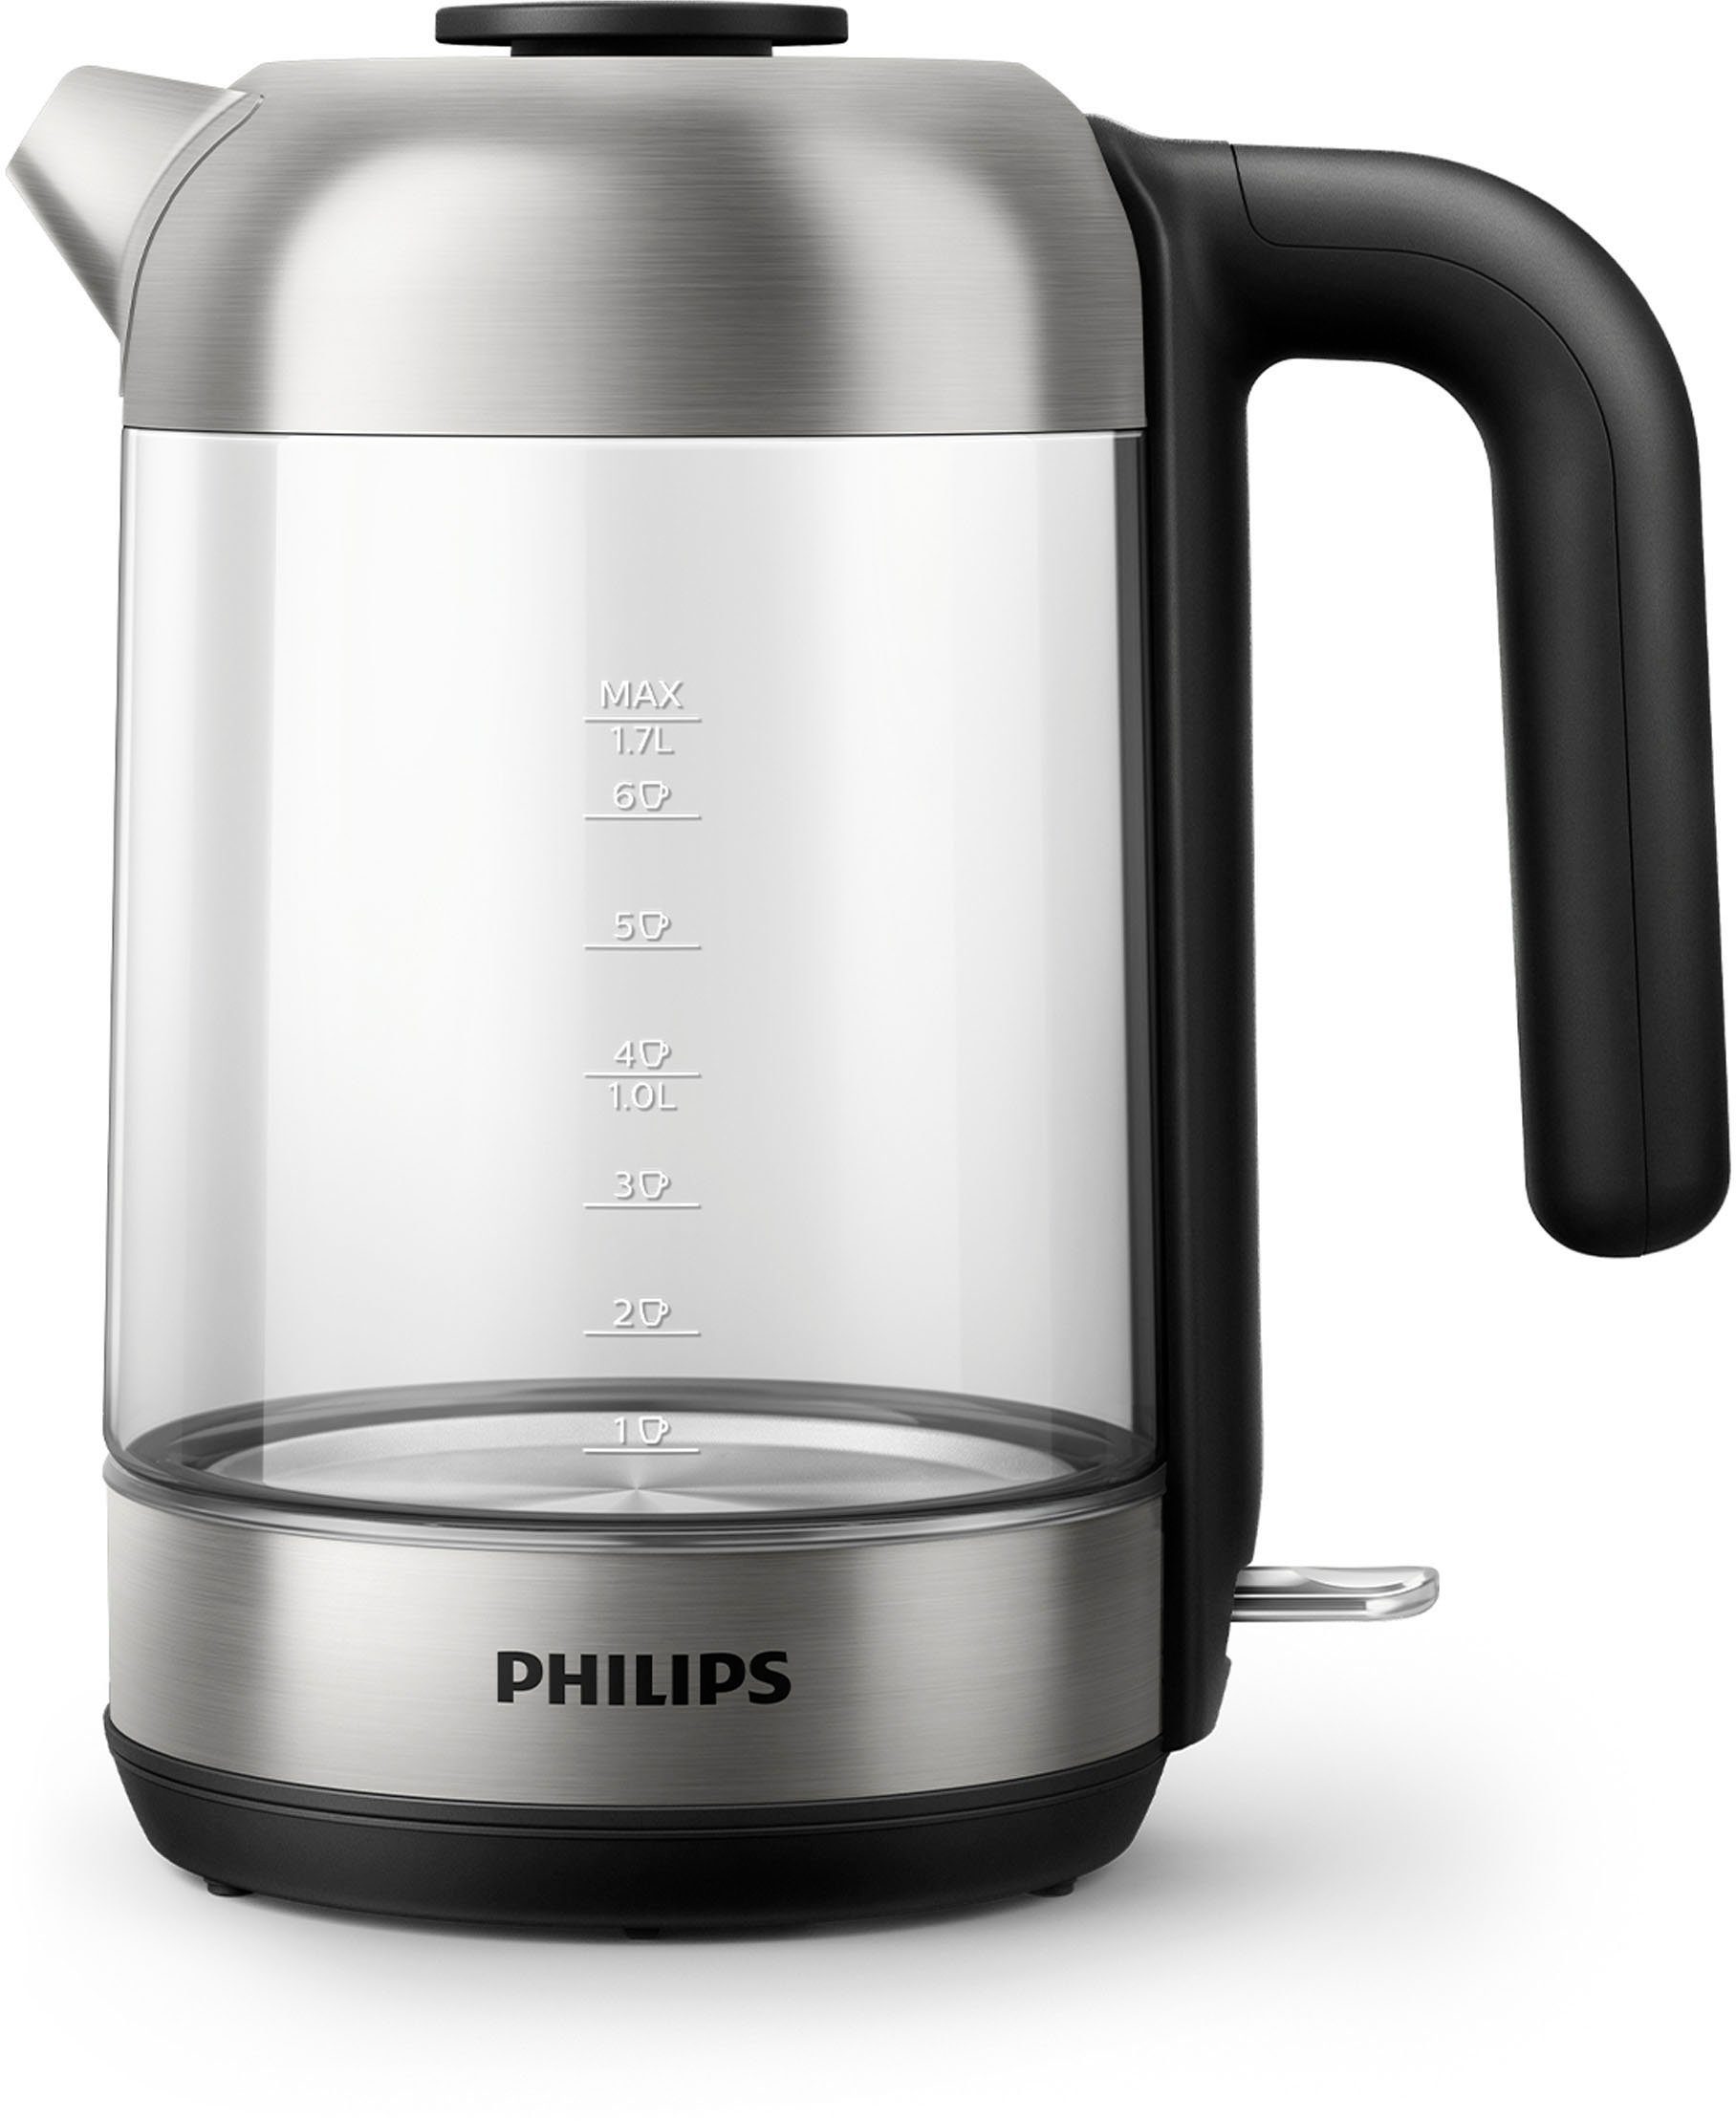 Philips 2200 Wasserkocher Series 1,7 l, W 5000 HD9339/80,